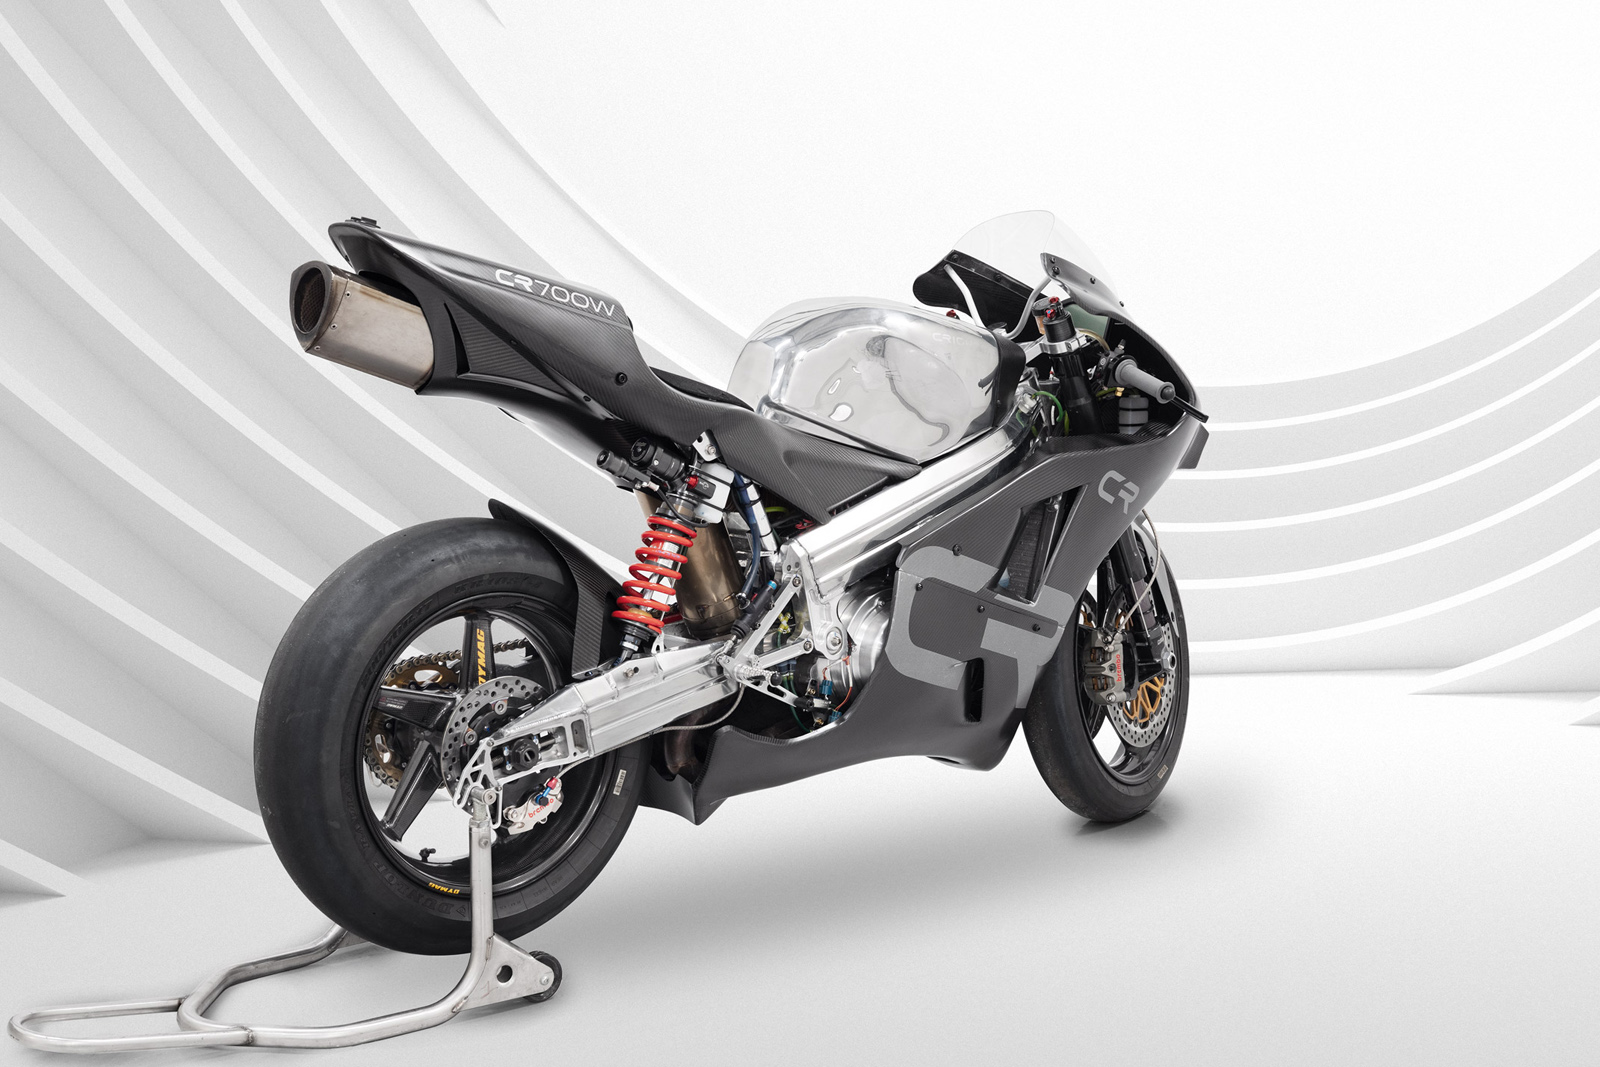 ロータリーエンジン搭載バイク クライトンcr700w 発表 元ノートンの技術者が25台限定生産